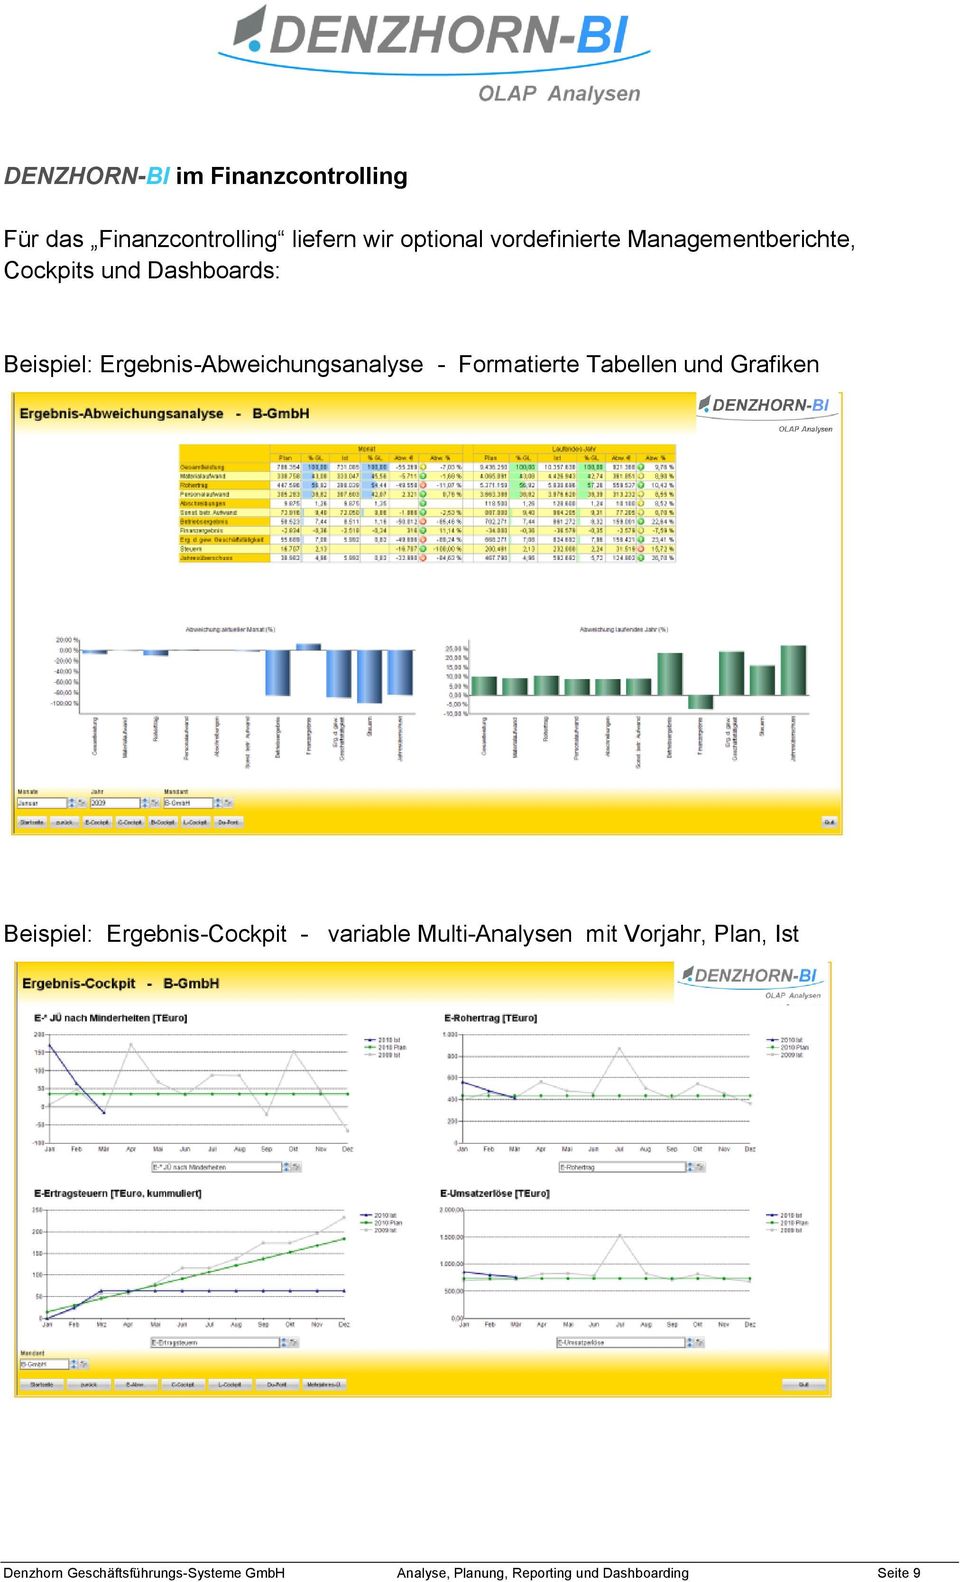 Formatierte Tabellen und Grafiken Beispiel: Ergebnis-Cockpit - variable Multi-Analysen mit